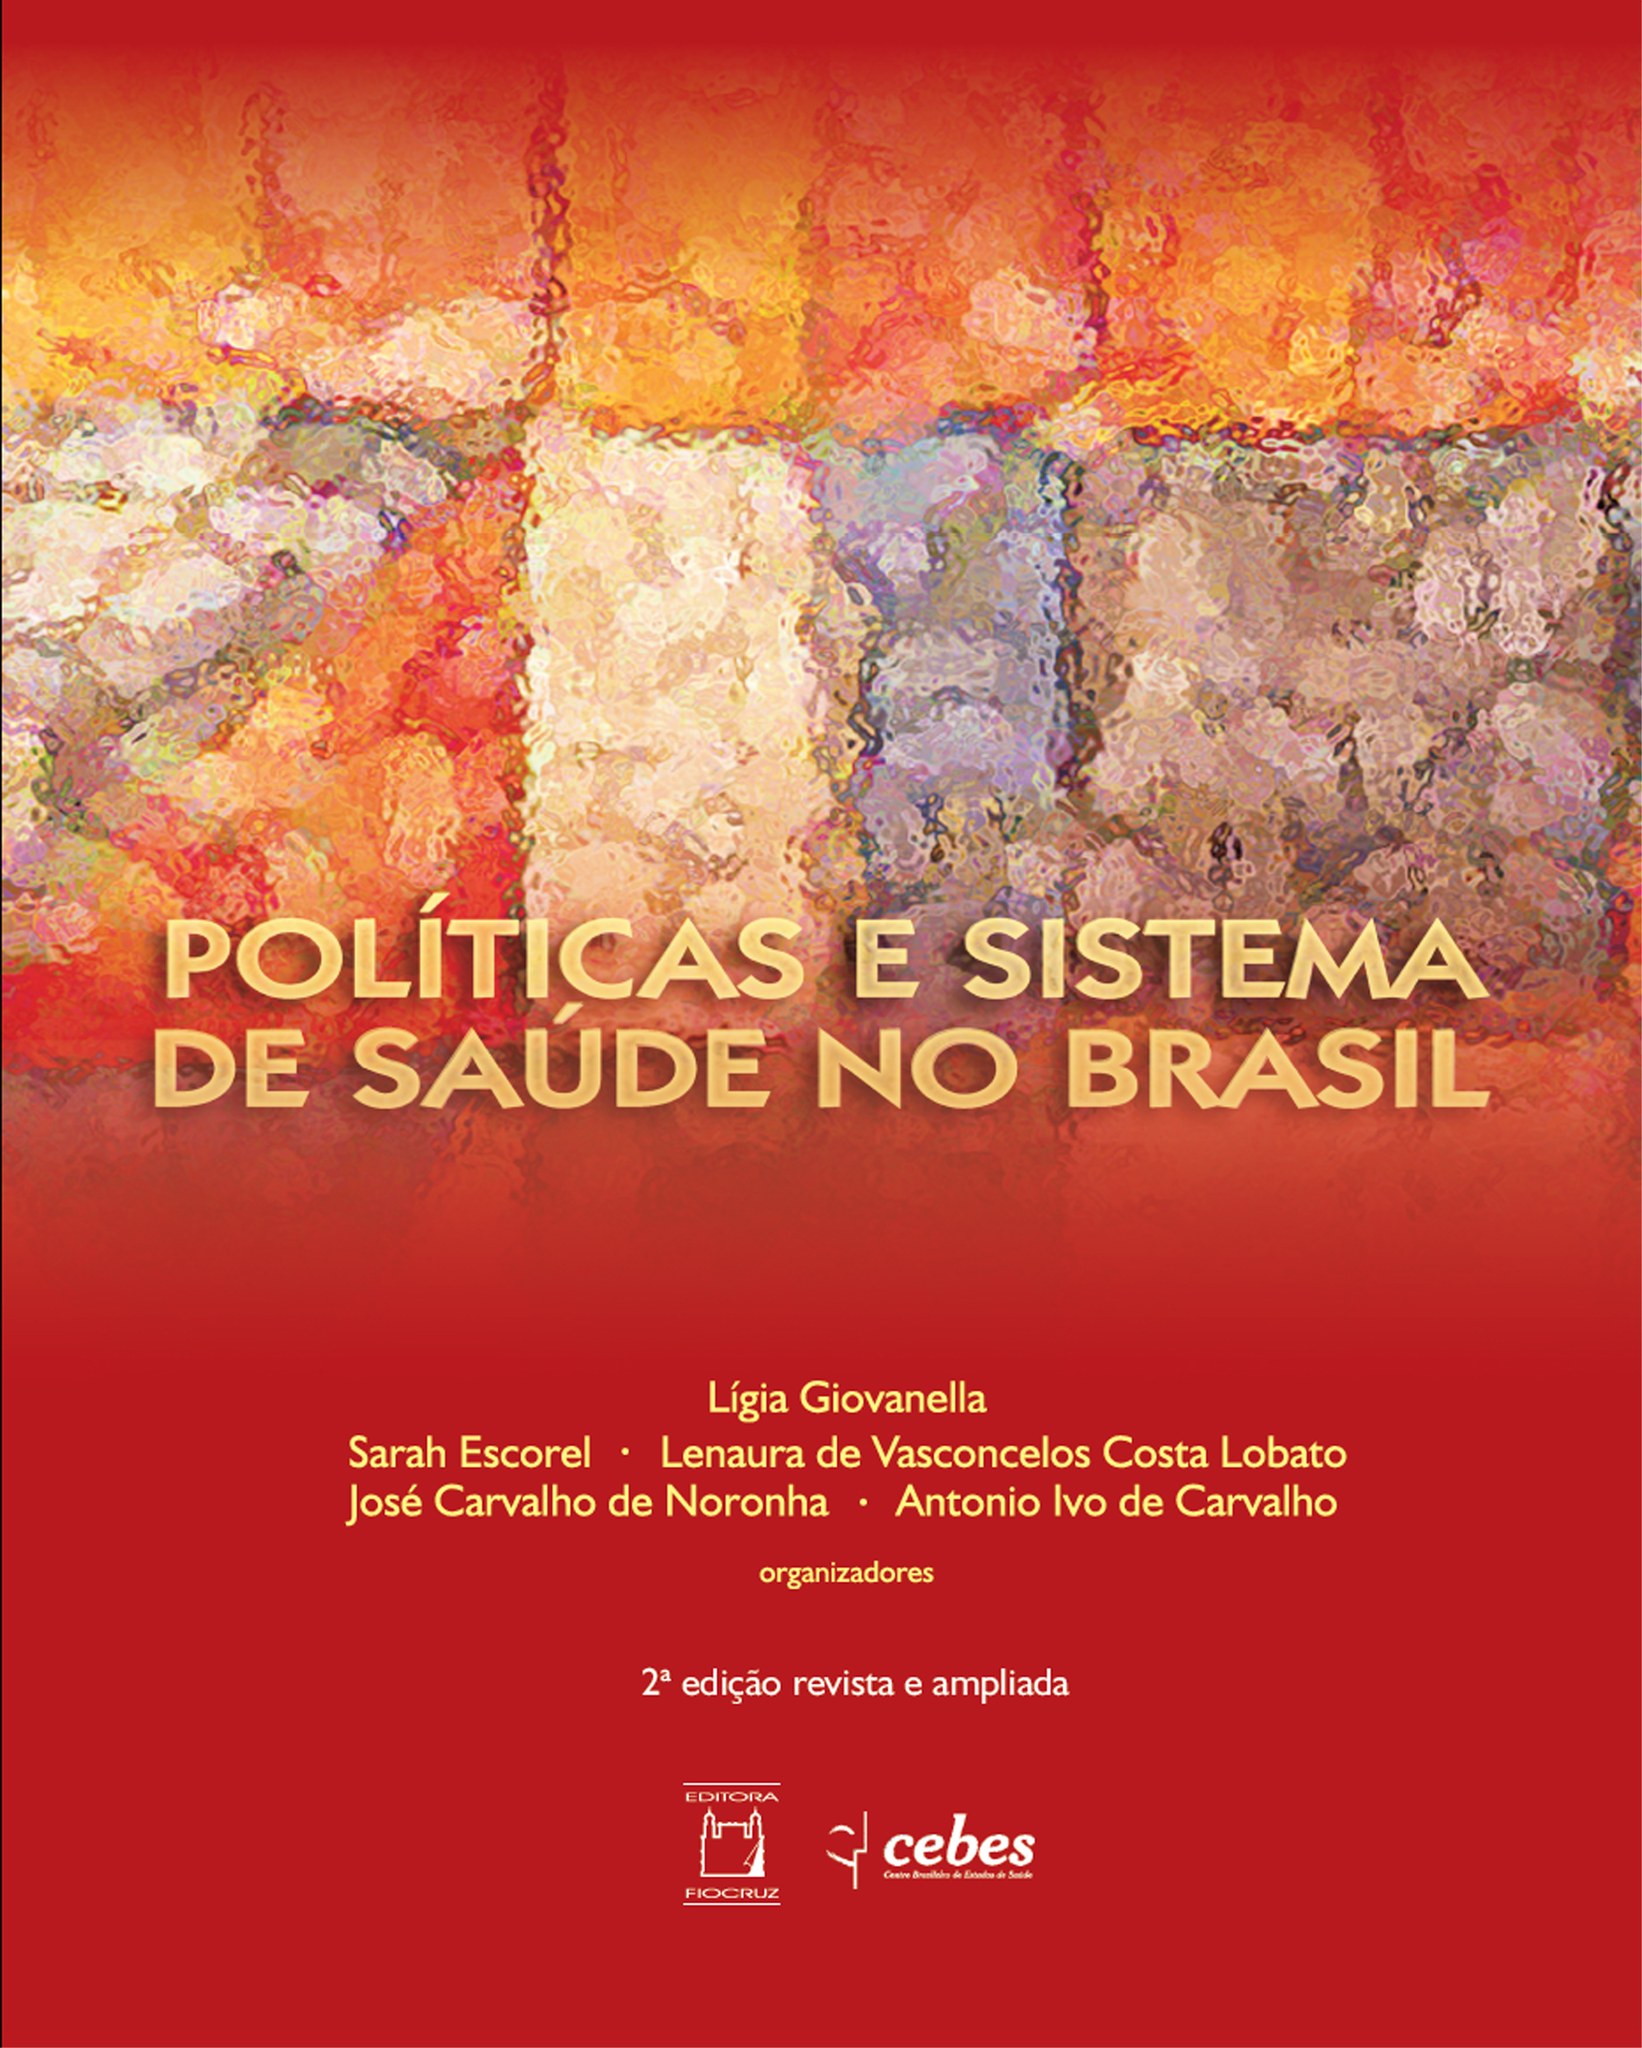 Livro Políticas e sistema de saúde no Brasil está disponível em acesso aberto